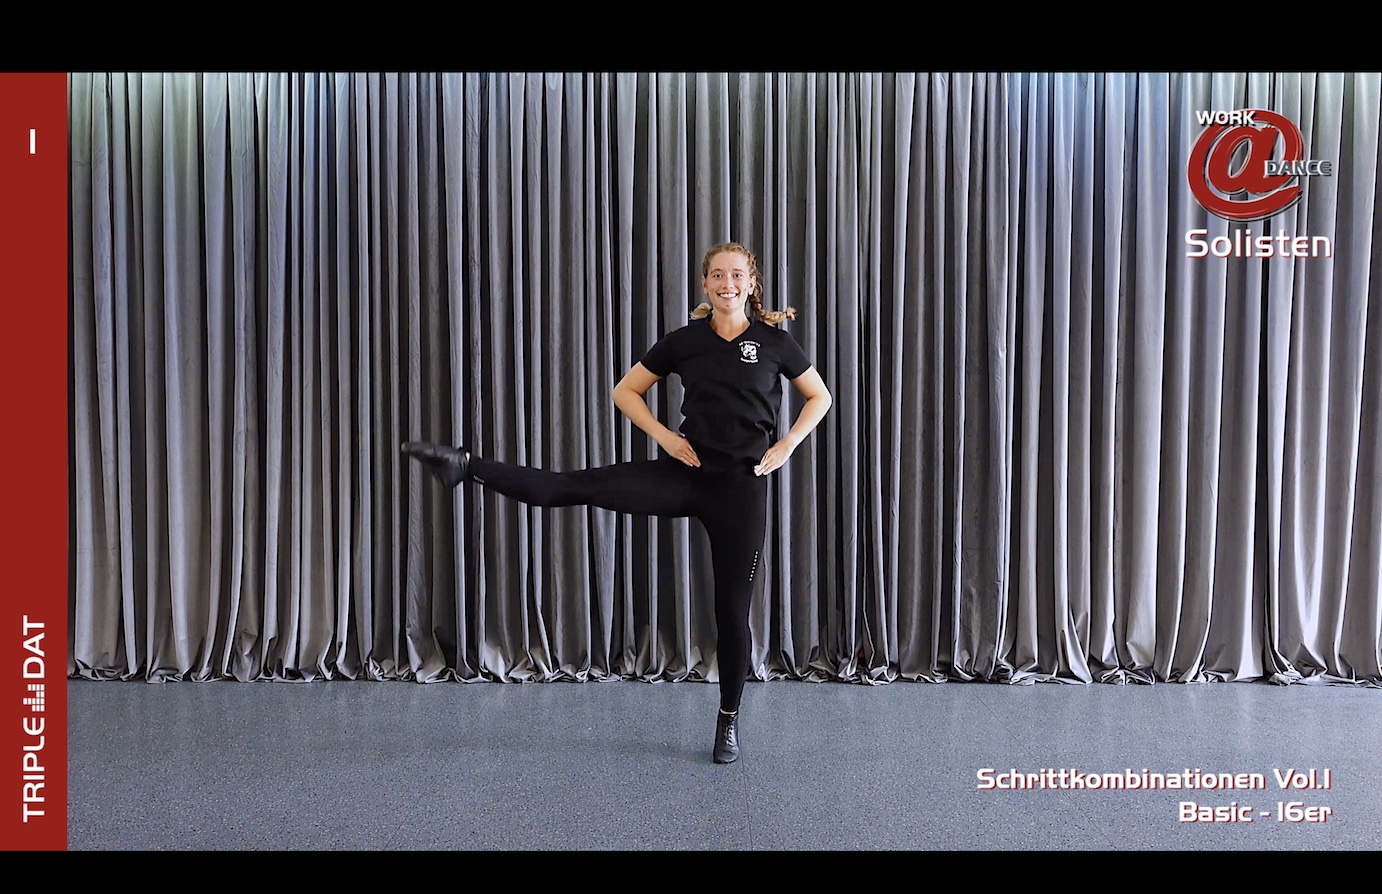 Work@Dance Solisten Schrittkombinationen 01 - Basic